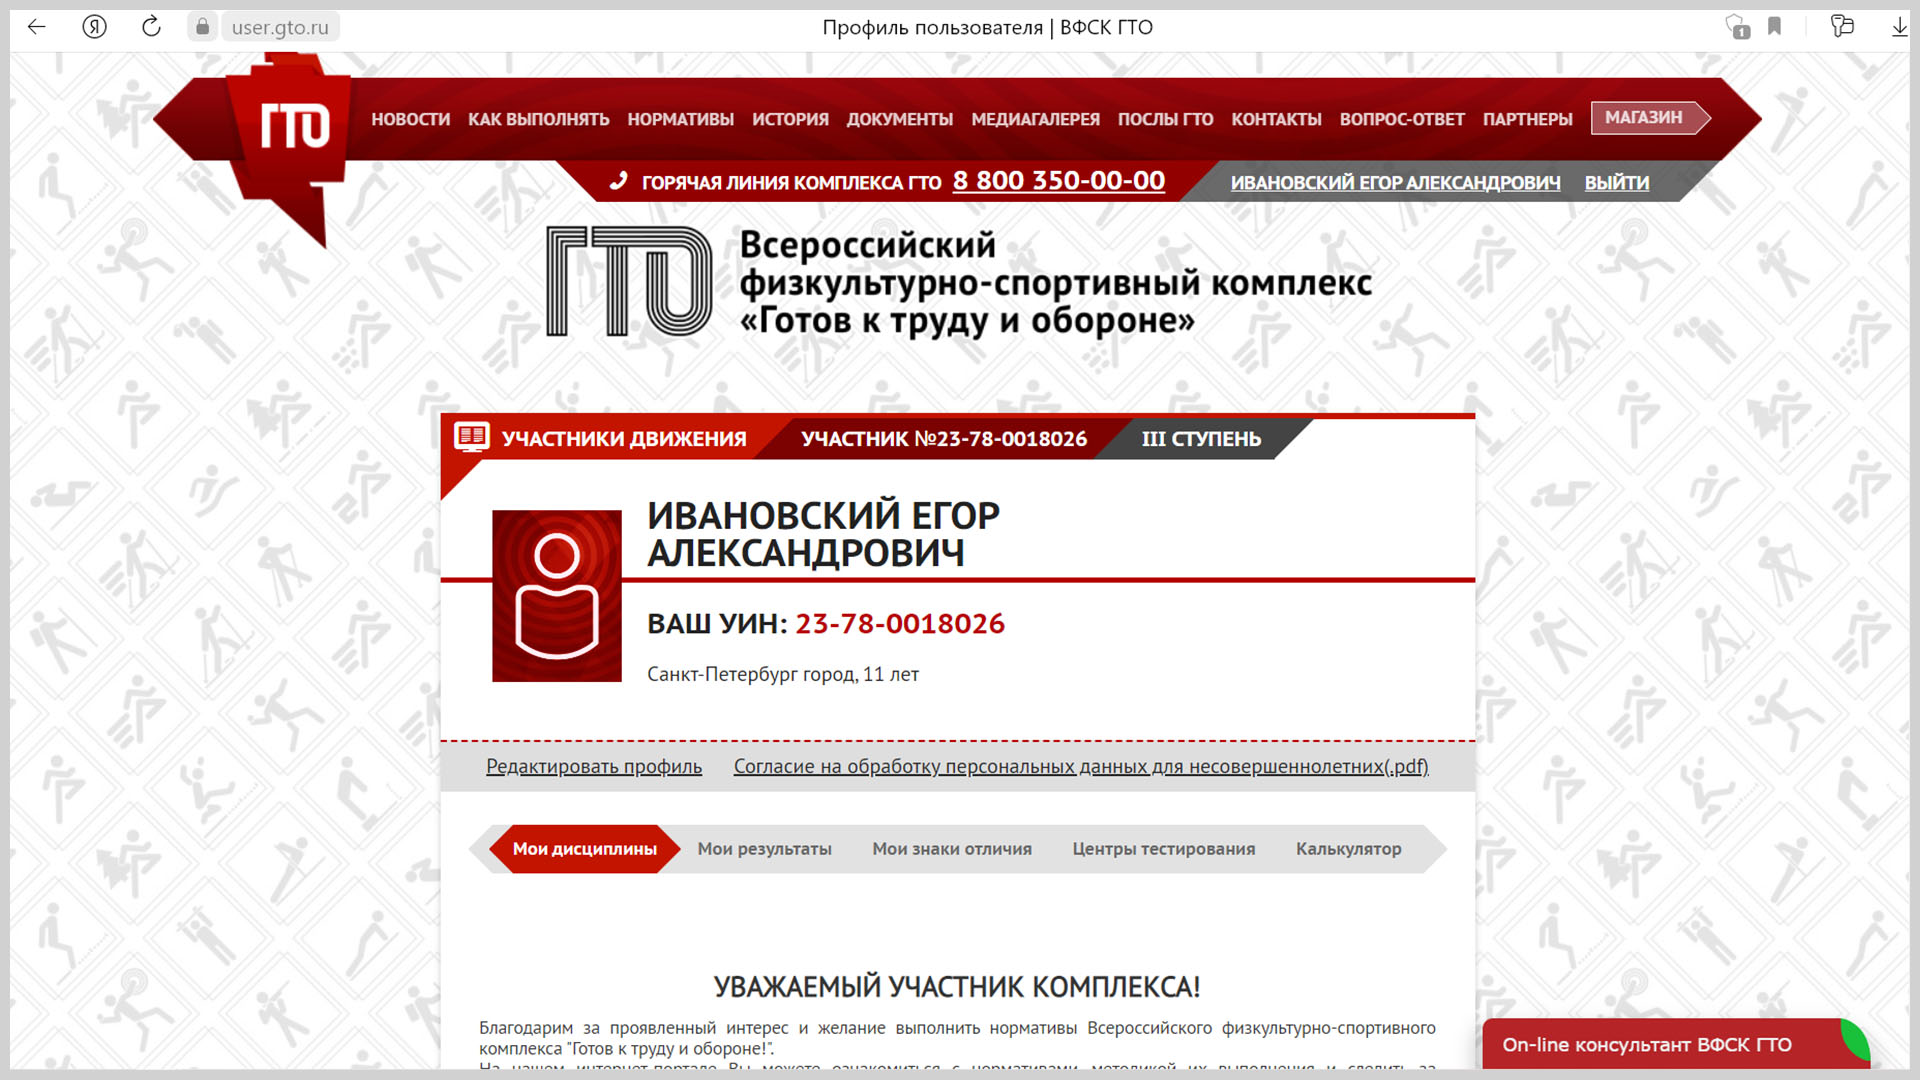 Скриншот первой страницы личного кабинета несовершеннолетнего на сайте ГТО.